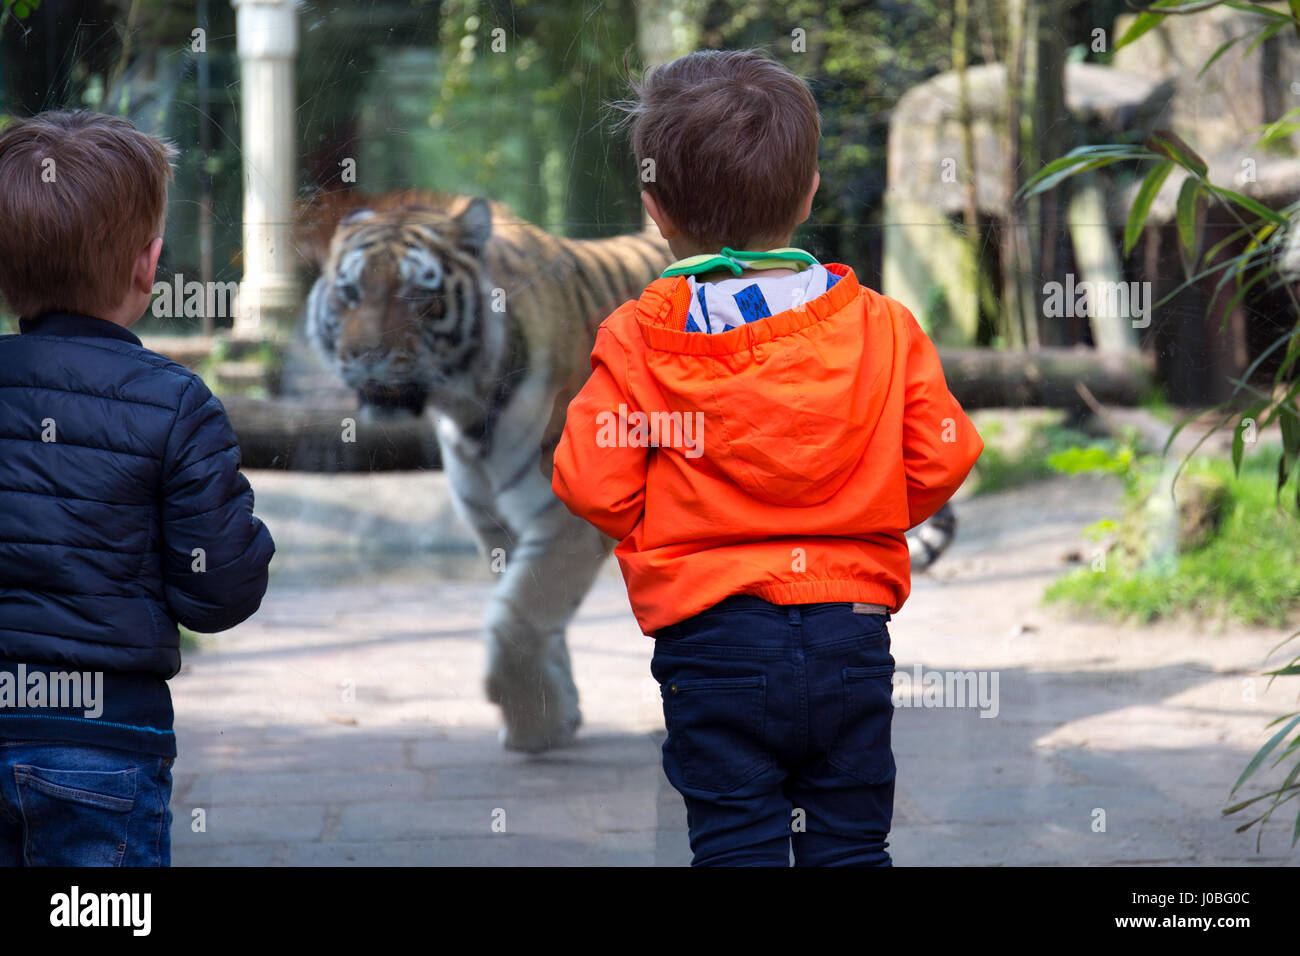 Due bambini (ragazzi piccoli / toddlers) guardando un avvicinamento tiger dietro il vetro allo zoo Foto Stock